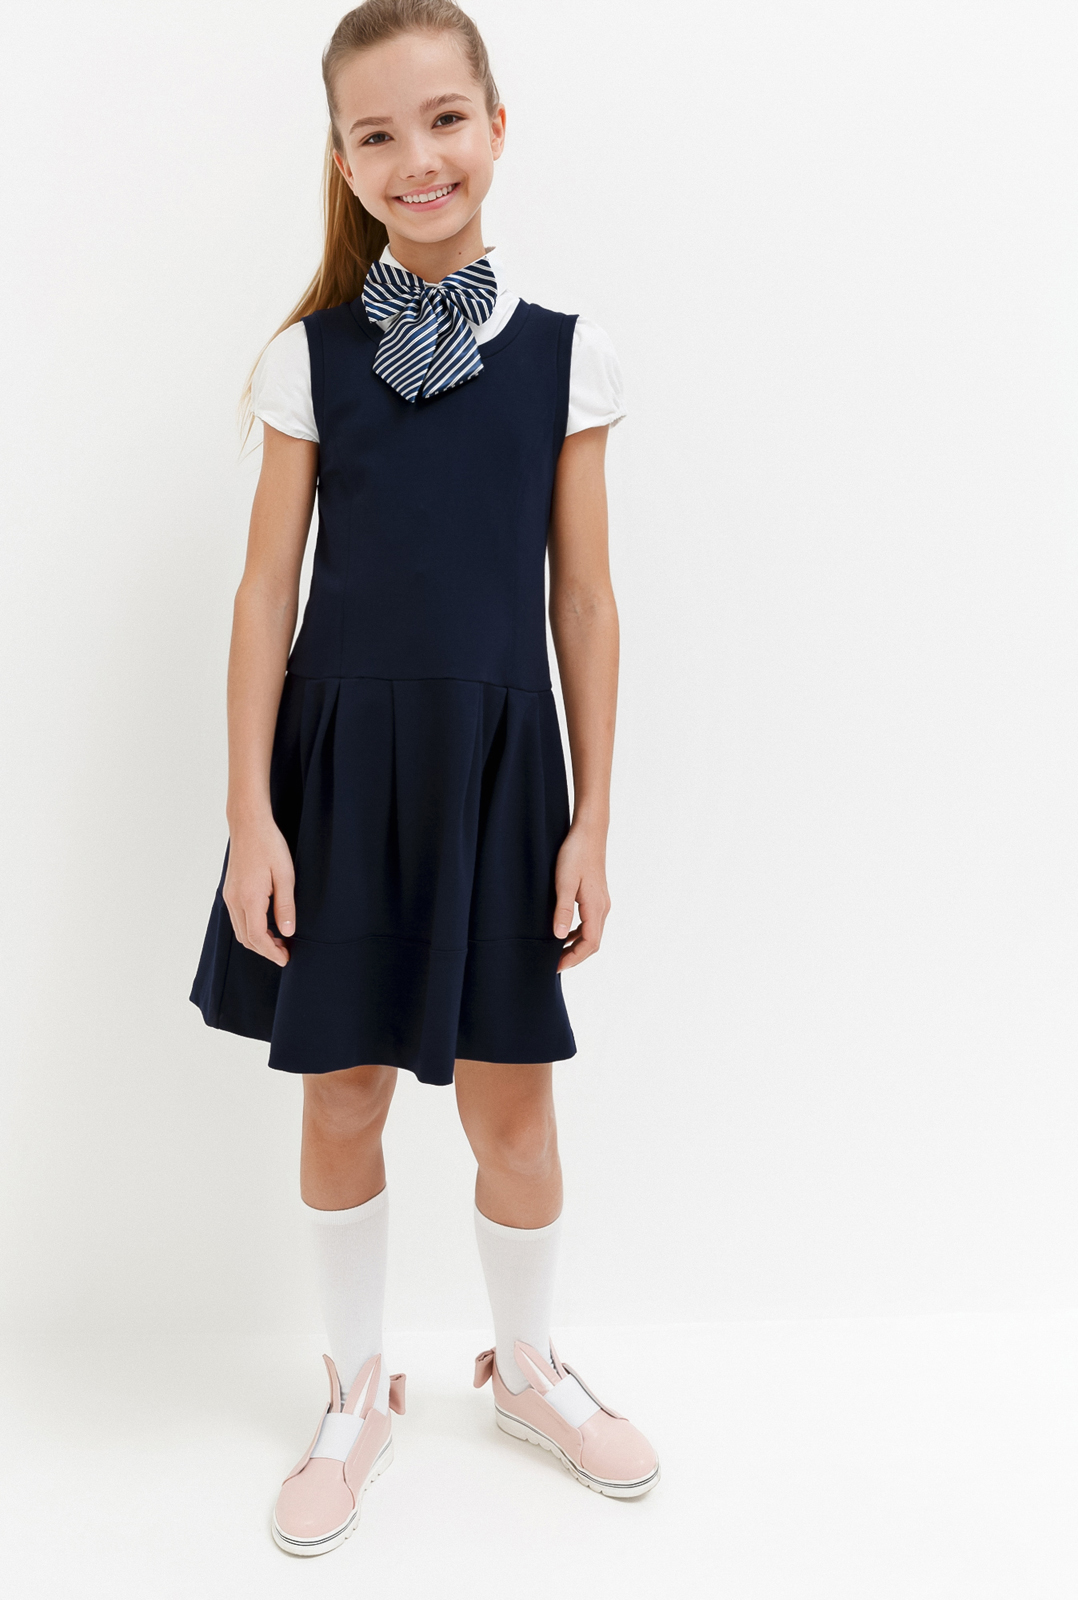 Платье для девочки Acoola Columbine, цвет: темно-голубой. 20240200028_600. Размер 146